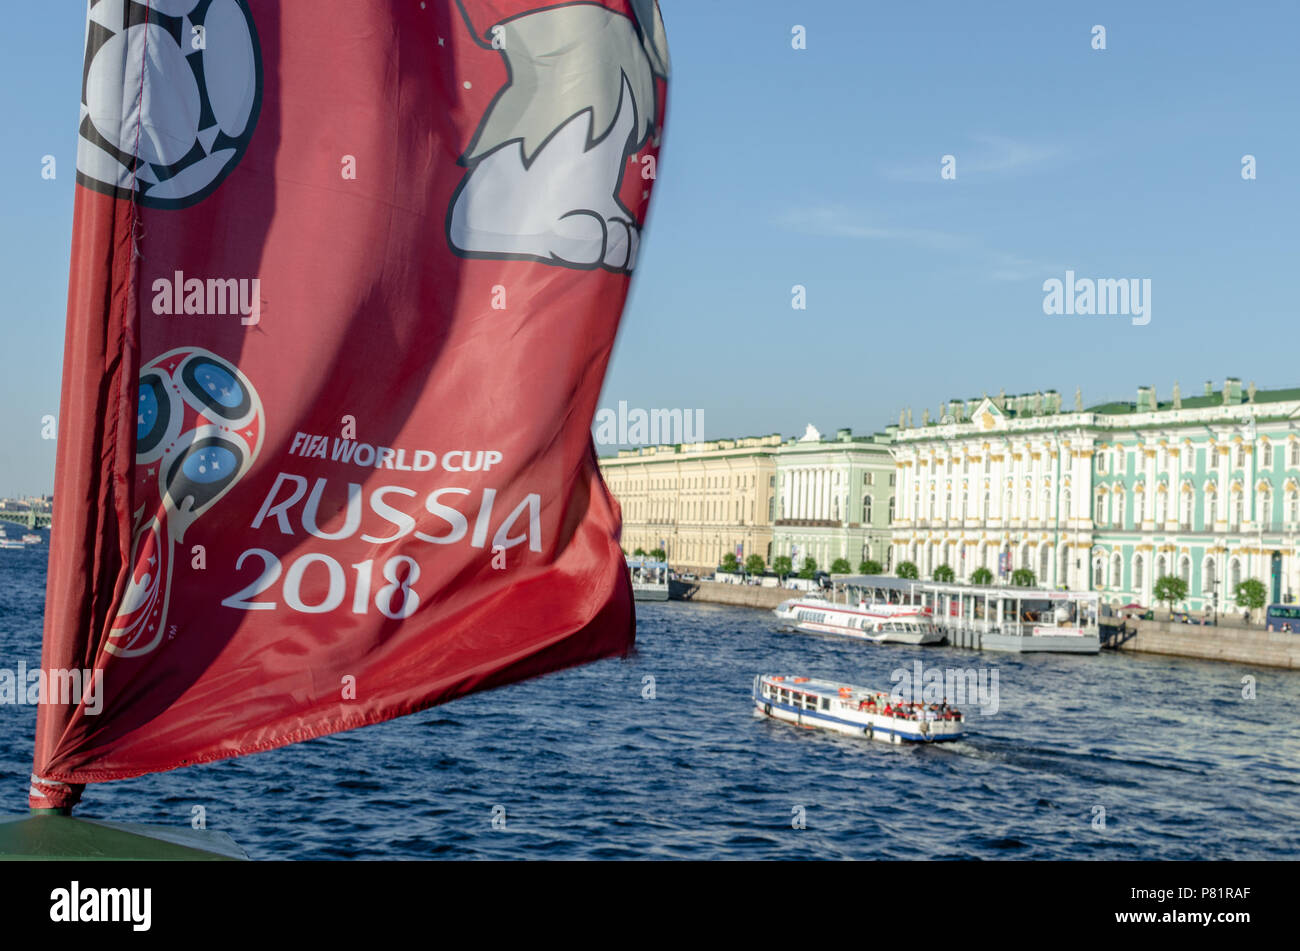 Bandera con la Rusia oficial 2018 world cup mascota y logotipo en el río Neva con vistas al Palacio de Invierno en San Petersburgo. Foto de stock